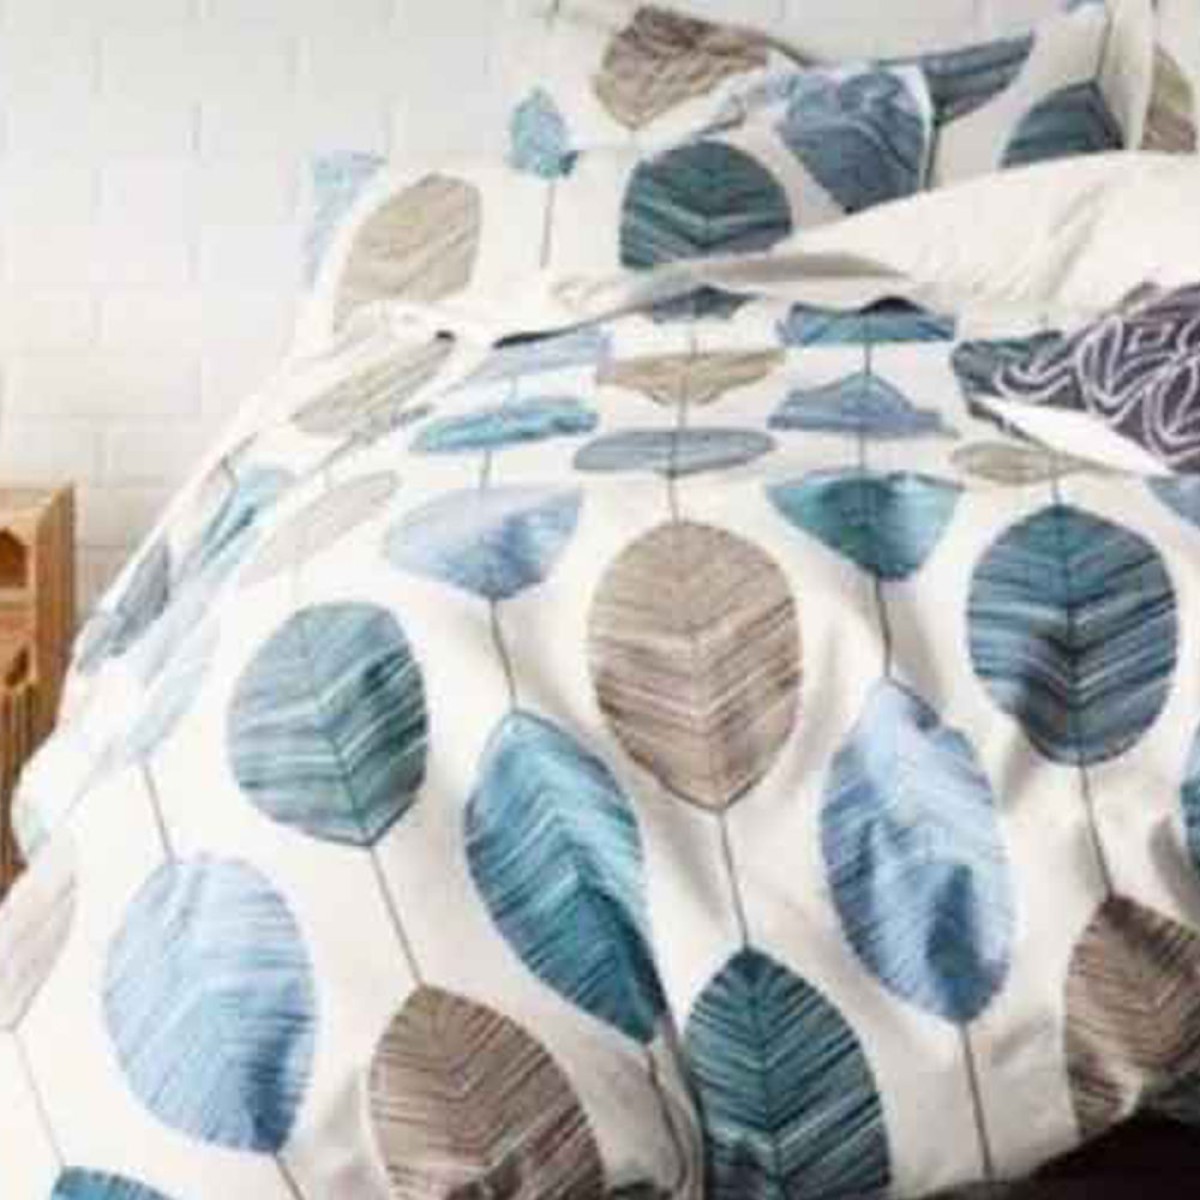 Κουβέρτα - Ριχτάρι Flannel Super Soft 130x170cm λευκό χρώμα με μπλε & καφέ σχέδια φύλλων TNS 39-950-2139-2